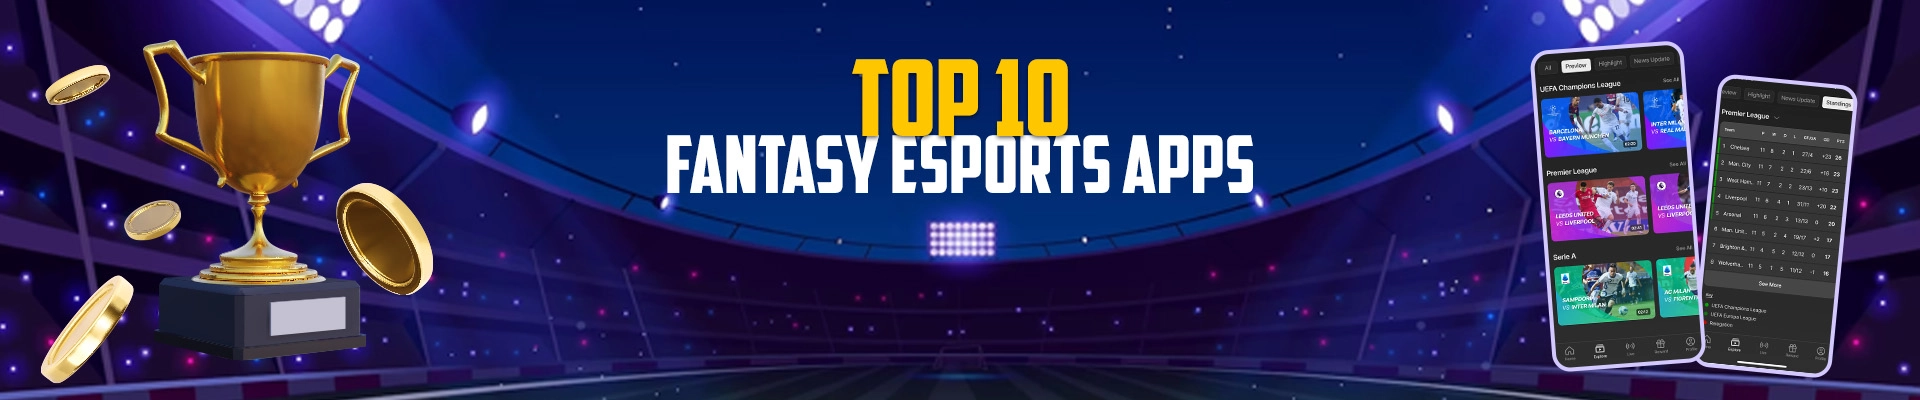 Top 10 Fantasy eSports App